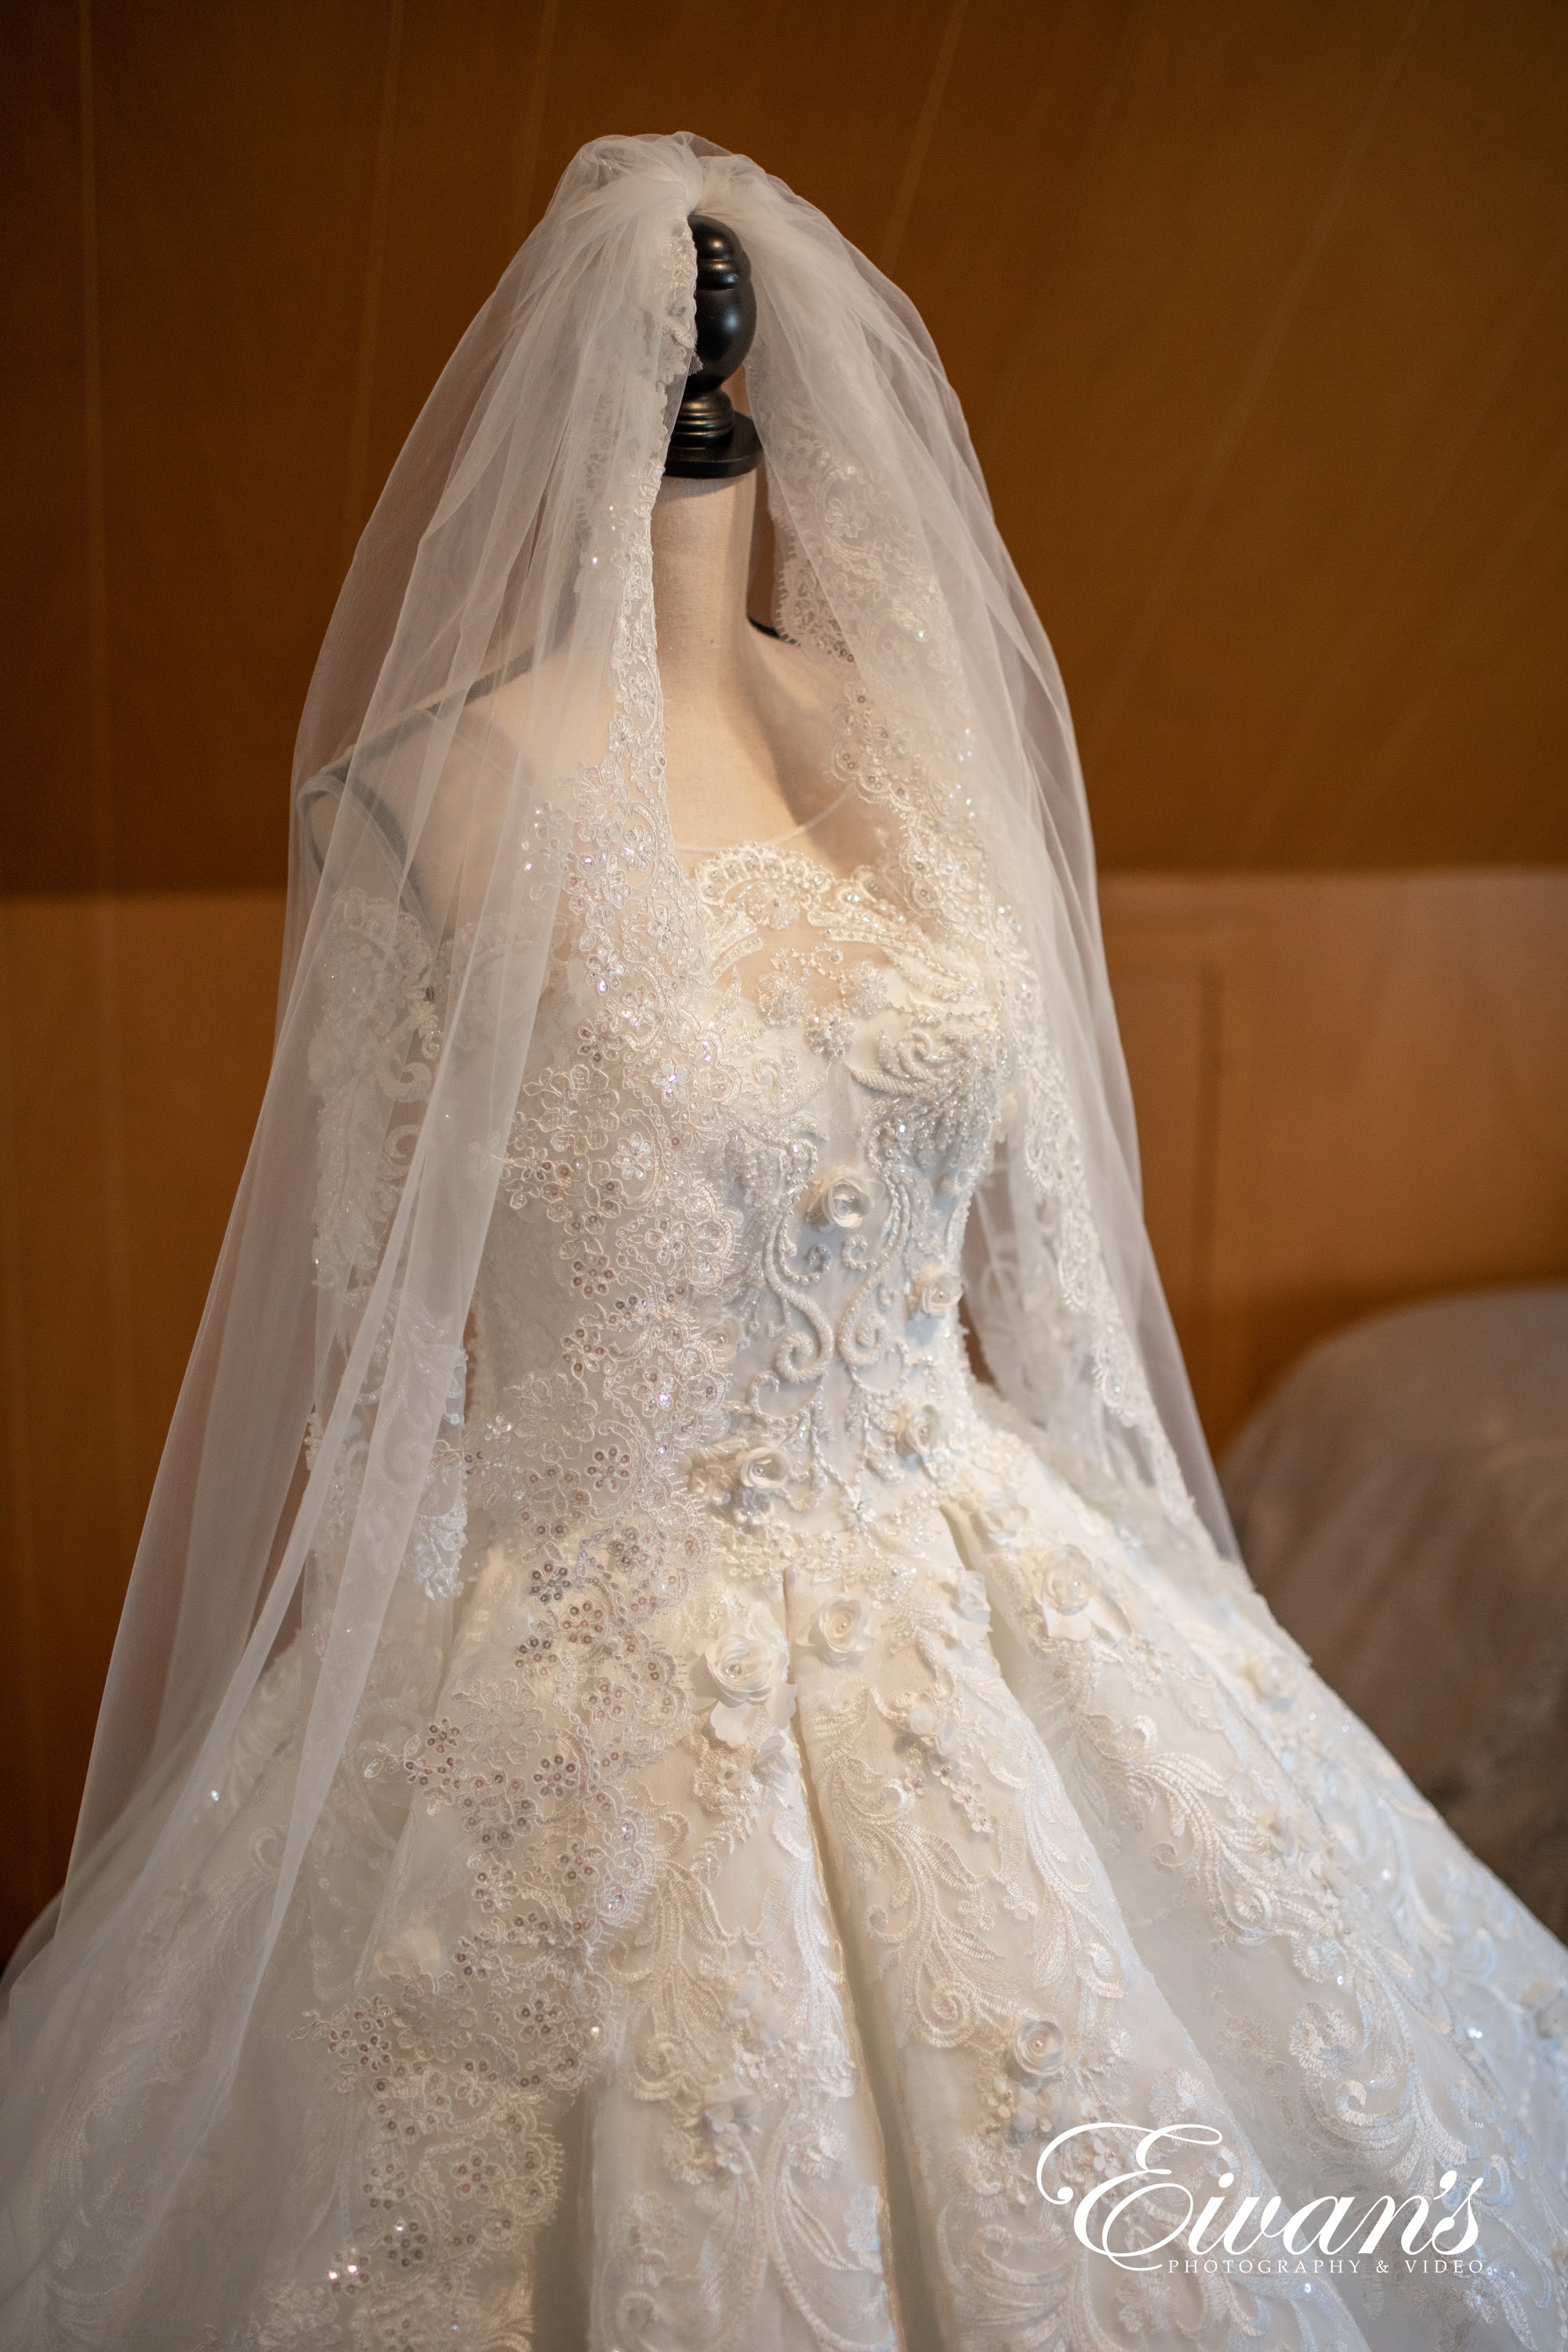 Muslim bride girl wears wedding dress Royalty Free Vector